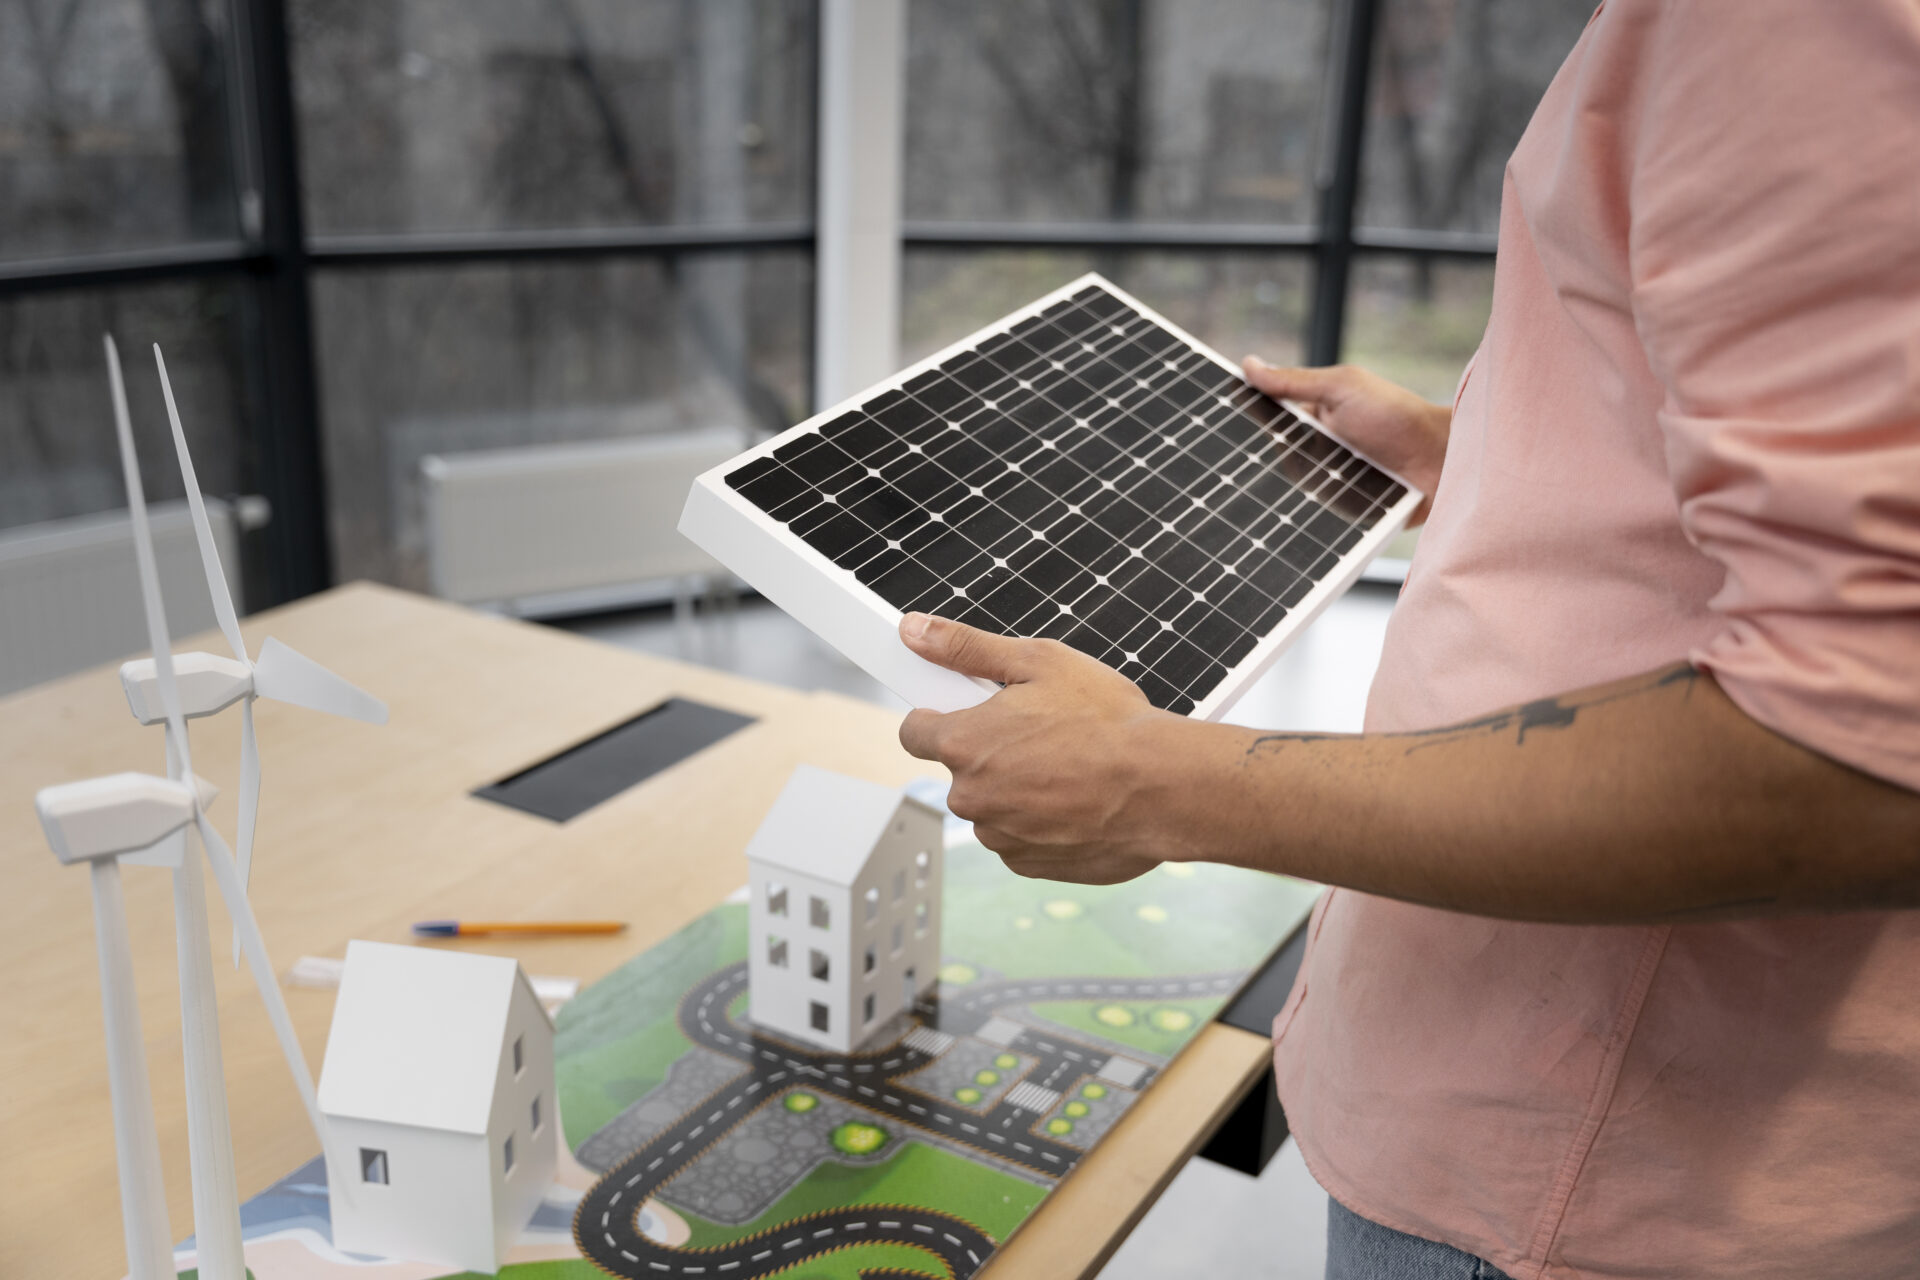 makety obnoviteľných zdrojov energie na drevenom stole, muž drží v ruke fotovoltické panely, na stole sú aj veterné turbíny, žiadosť o dotácie na fotovoltiku